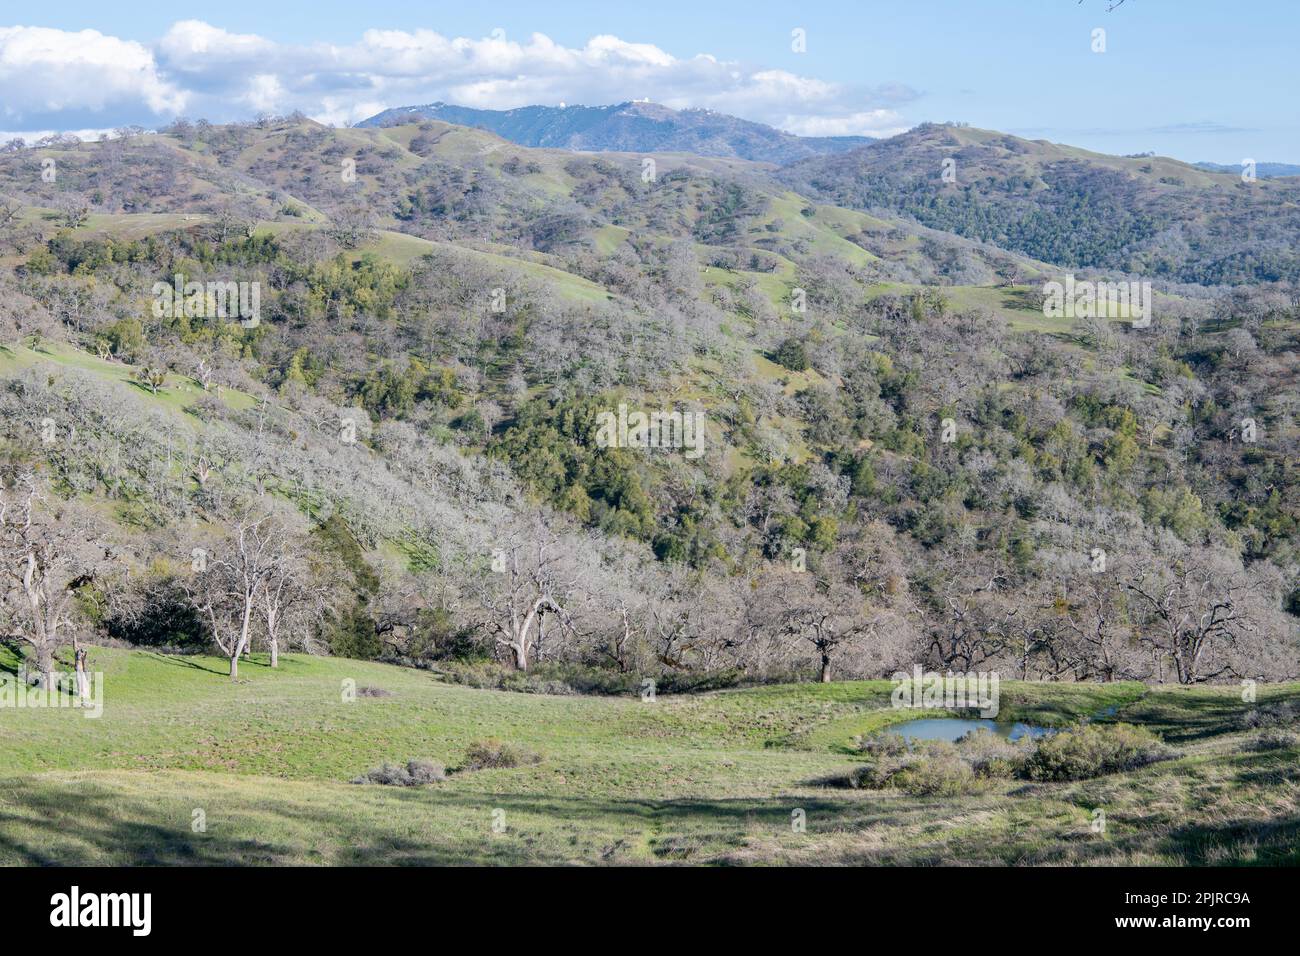 Un paysage sauvage boisé avec des collines ondoyantes et des chênes dans le comté de Santa Clara, Californie, États-Unis. Banque D'Images